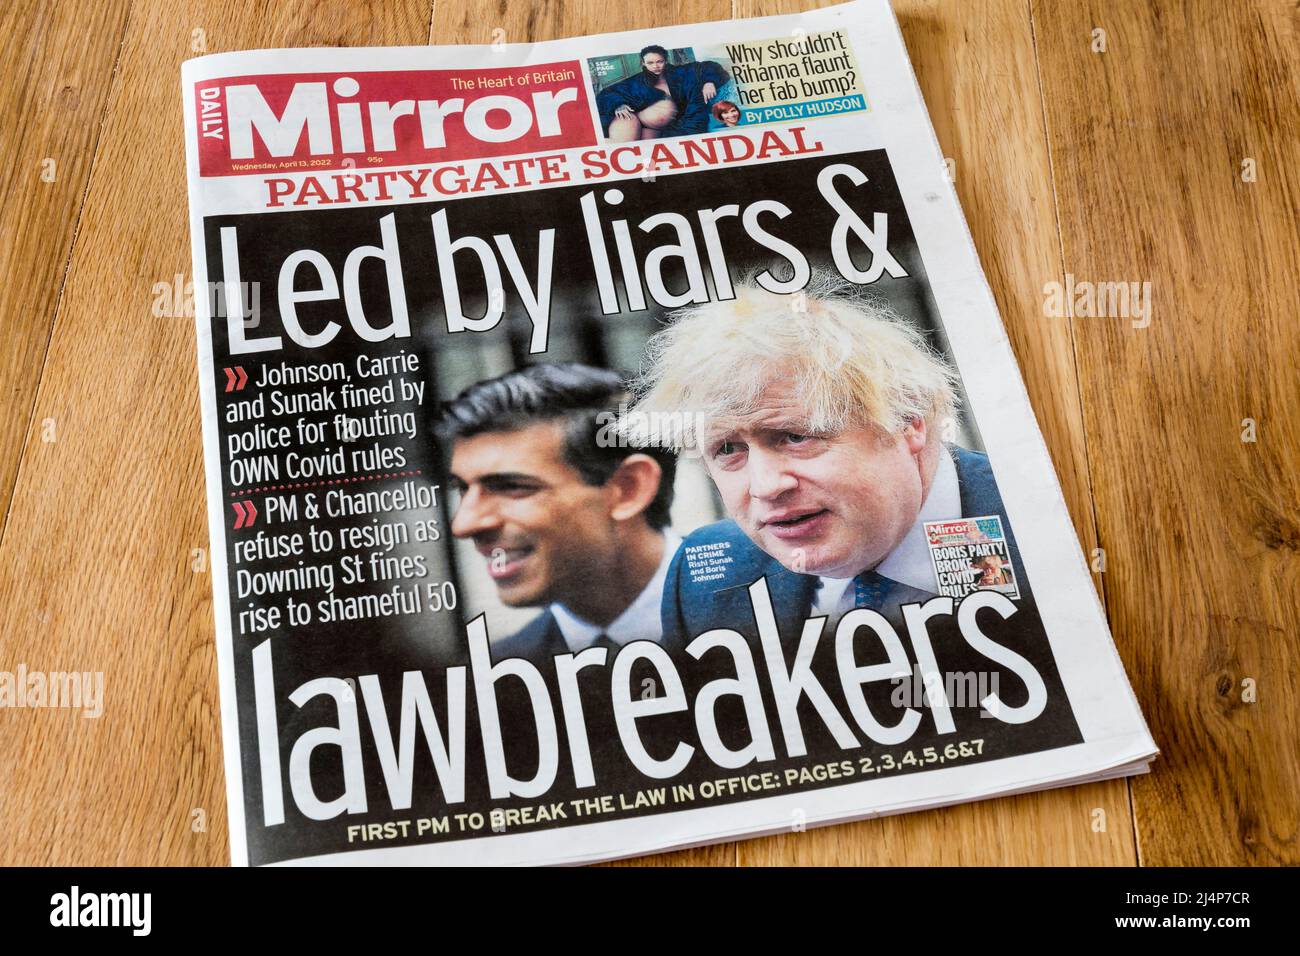 Daily Mirror Headline du 13 avril, sous la direction de menteurs et de brise-lois. Réponse à une amende infligée à Johnson à des parties pendant le verrouillage de la COVID. Banque D'Images